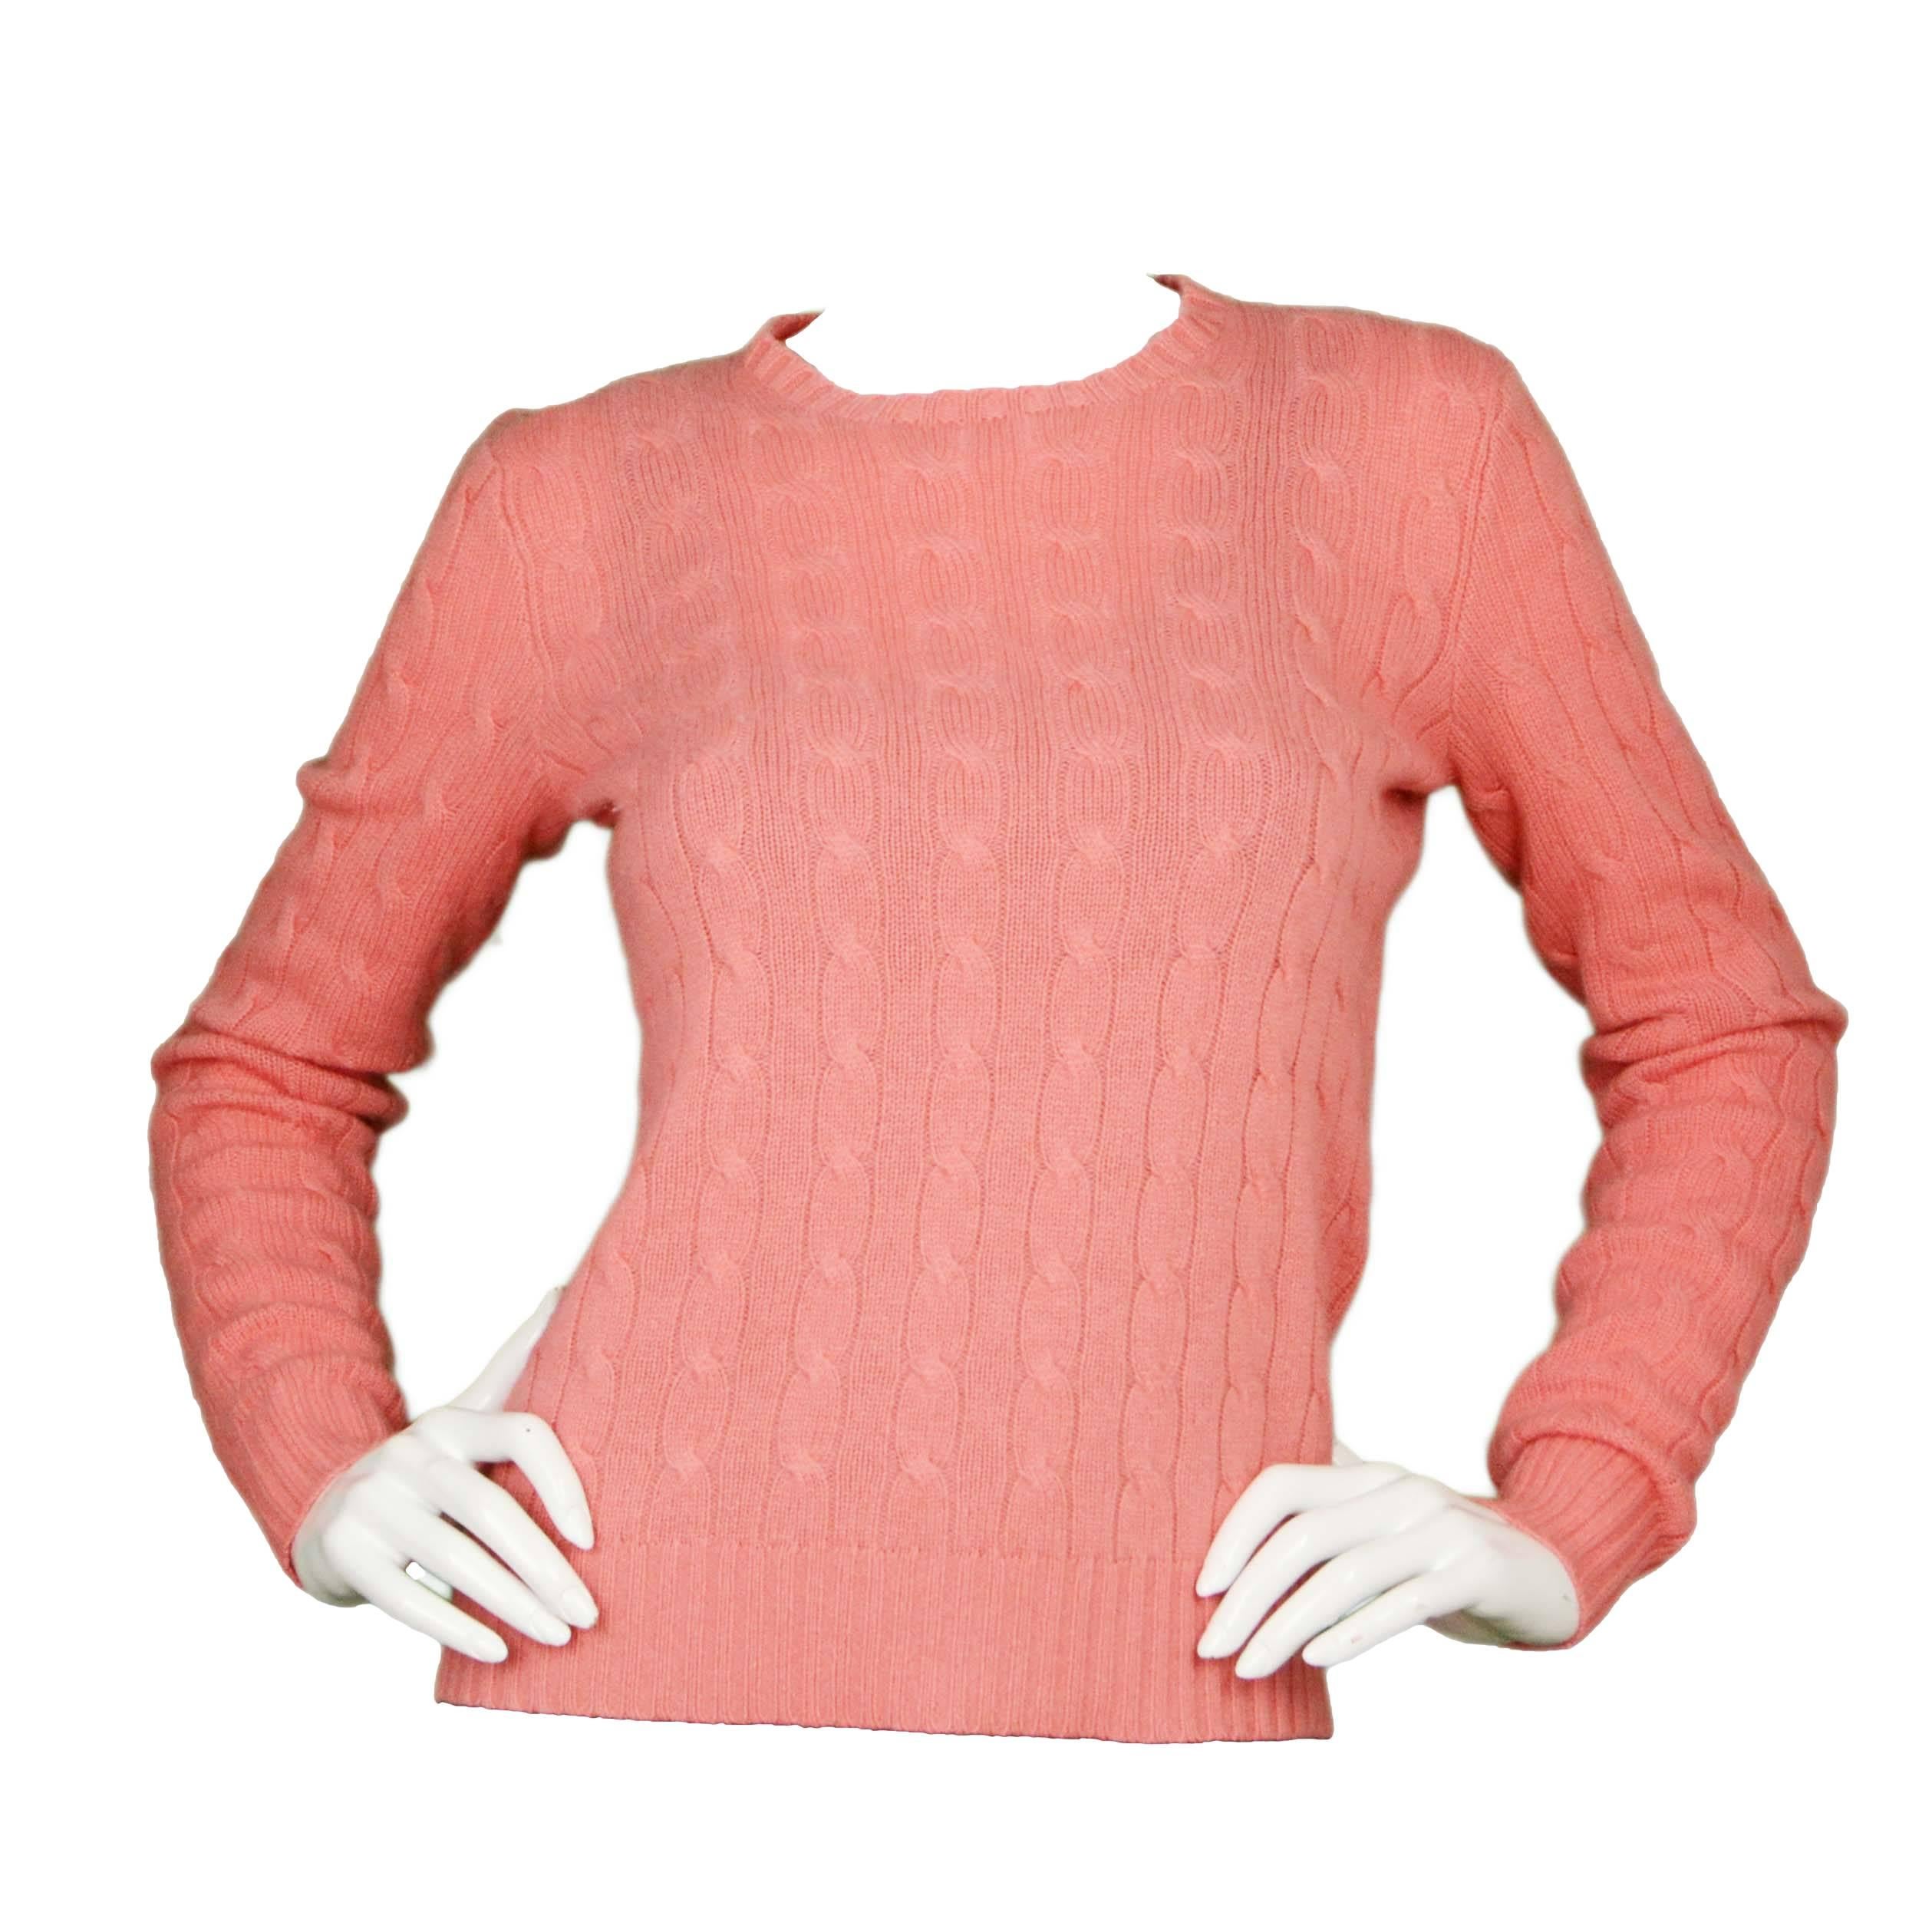 Ralph Lauren Salmon Cable Knit Cashmere Sweater sz M